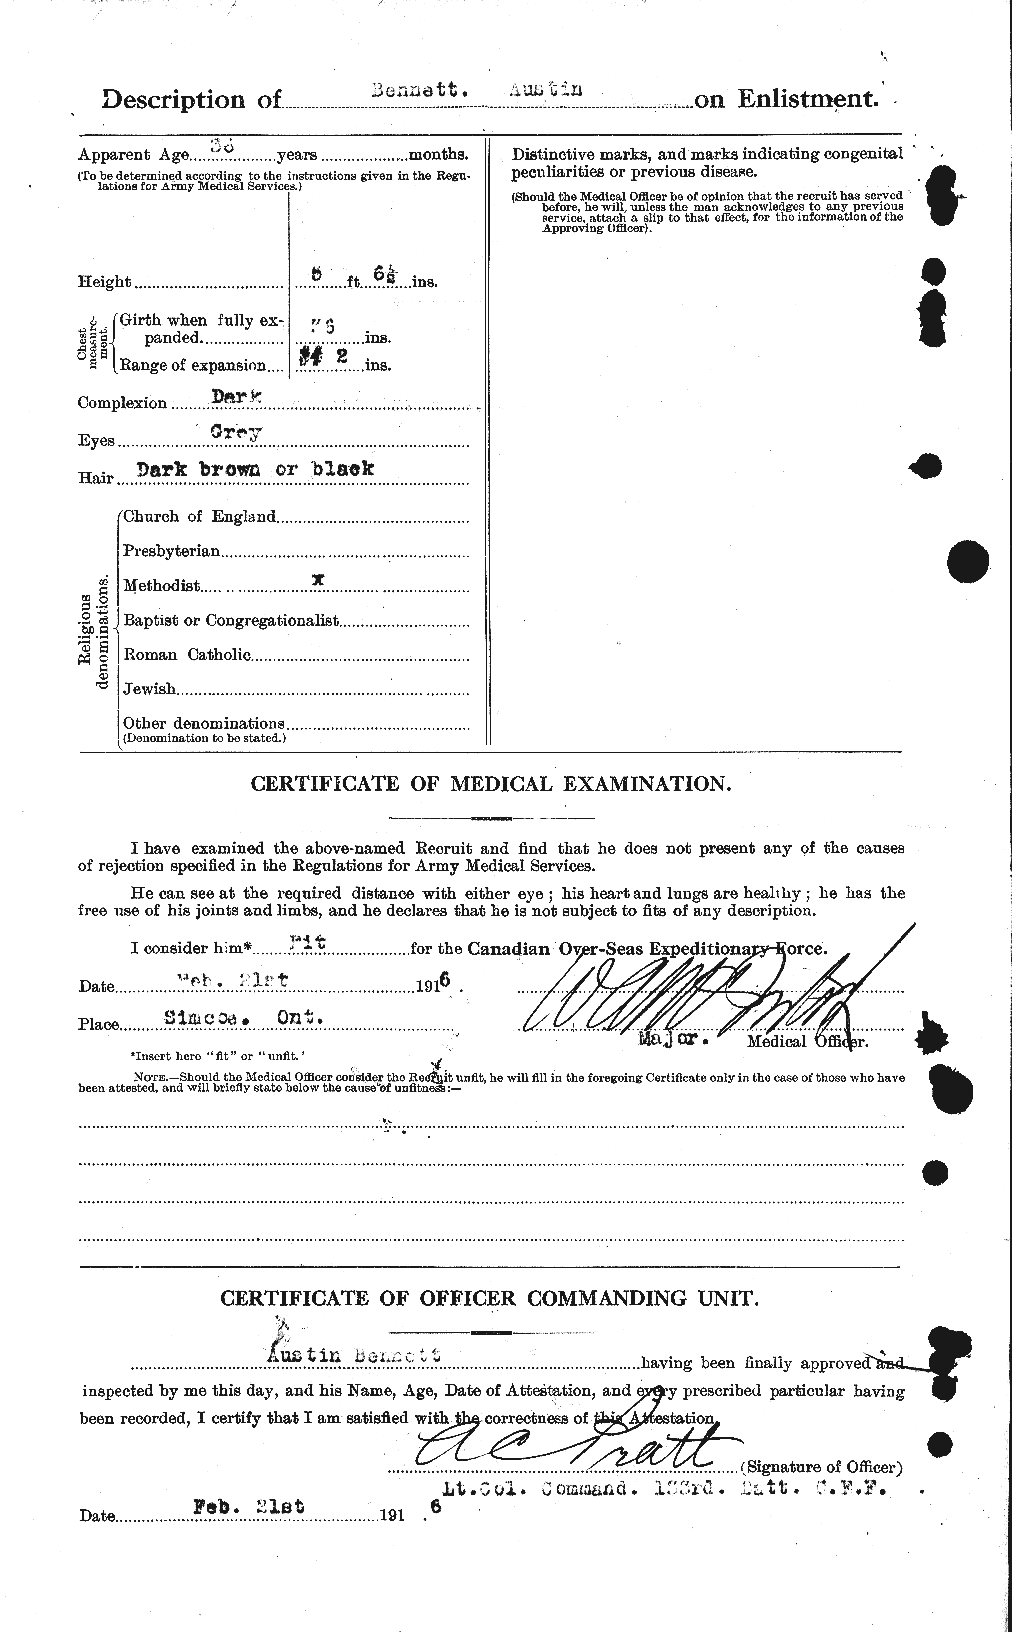 Dossiers du Personnel de la Première Guerre mondiale - CEC 233354b